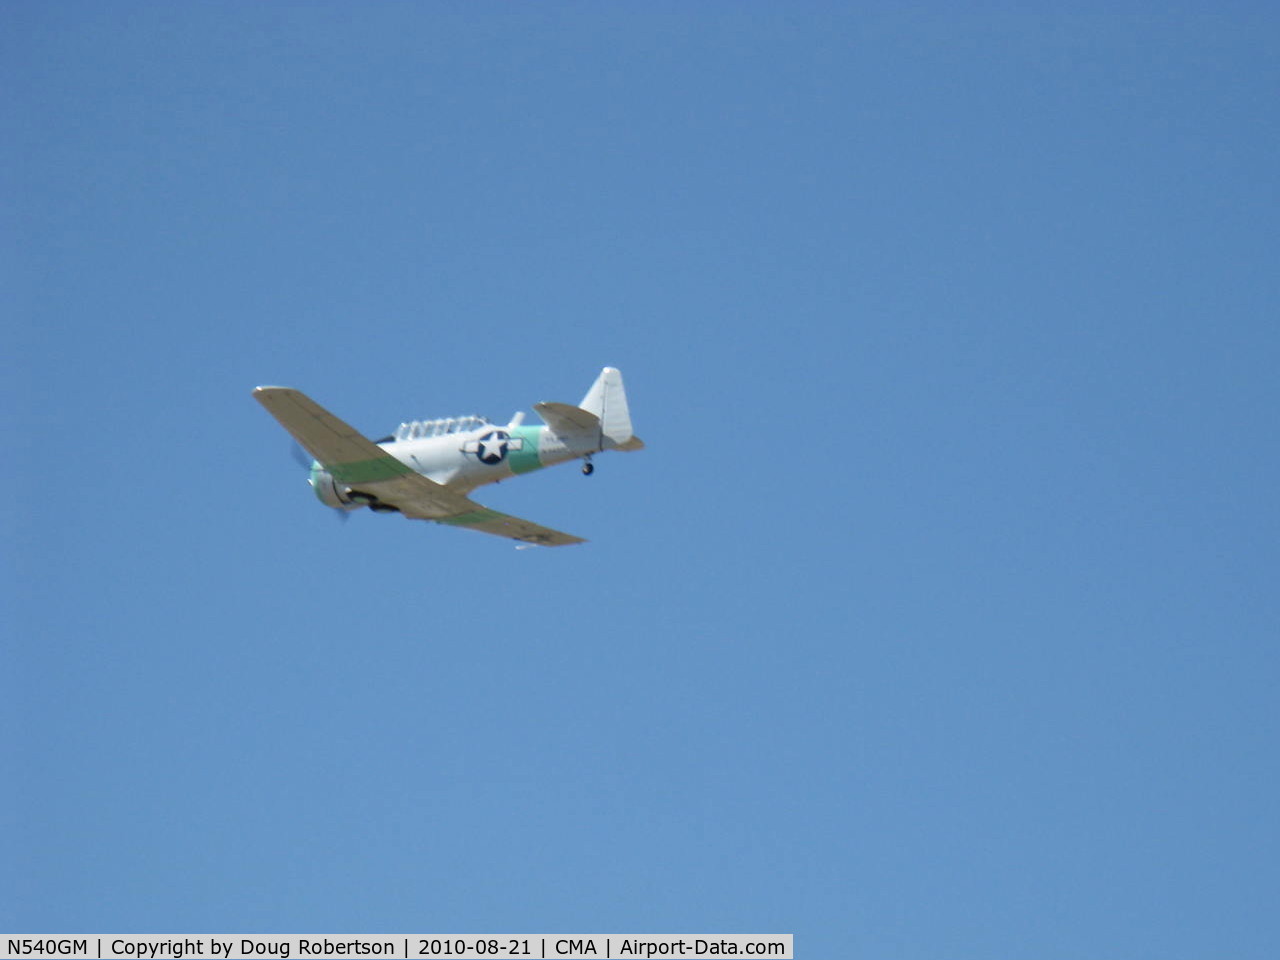 N540GM, 1942 North American SNJ-4 Texan C/N 88-9141, North American SNJ-4, P&W R-1340 Wasp 600 Hp, flyover